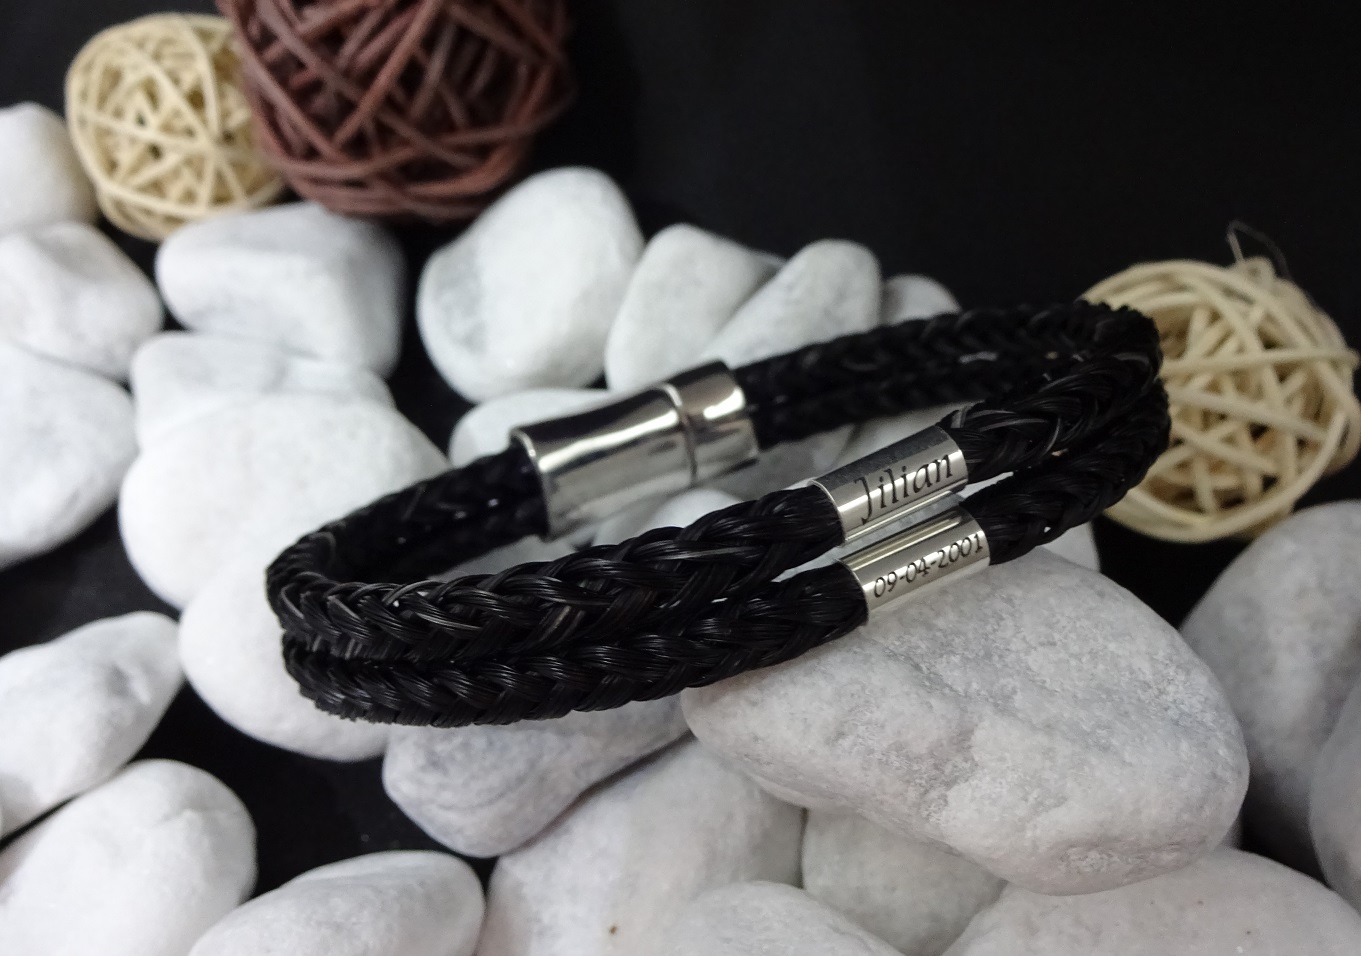 Doppelt viereckig geflochtenes Armband mit Edelstahl-Magnet-Verschluss mit Sicherung, mit zwei 925er Silber Hülsen mit Gravur - Preis: 119 Euro